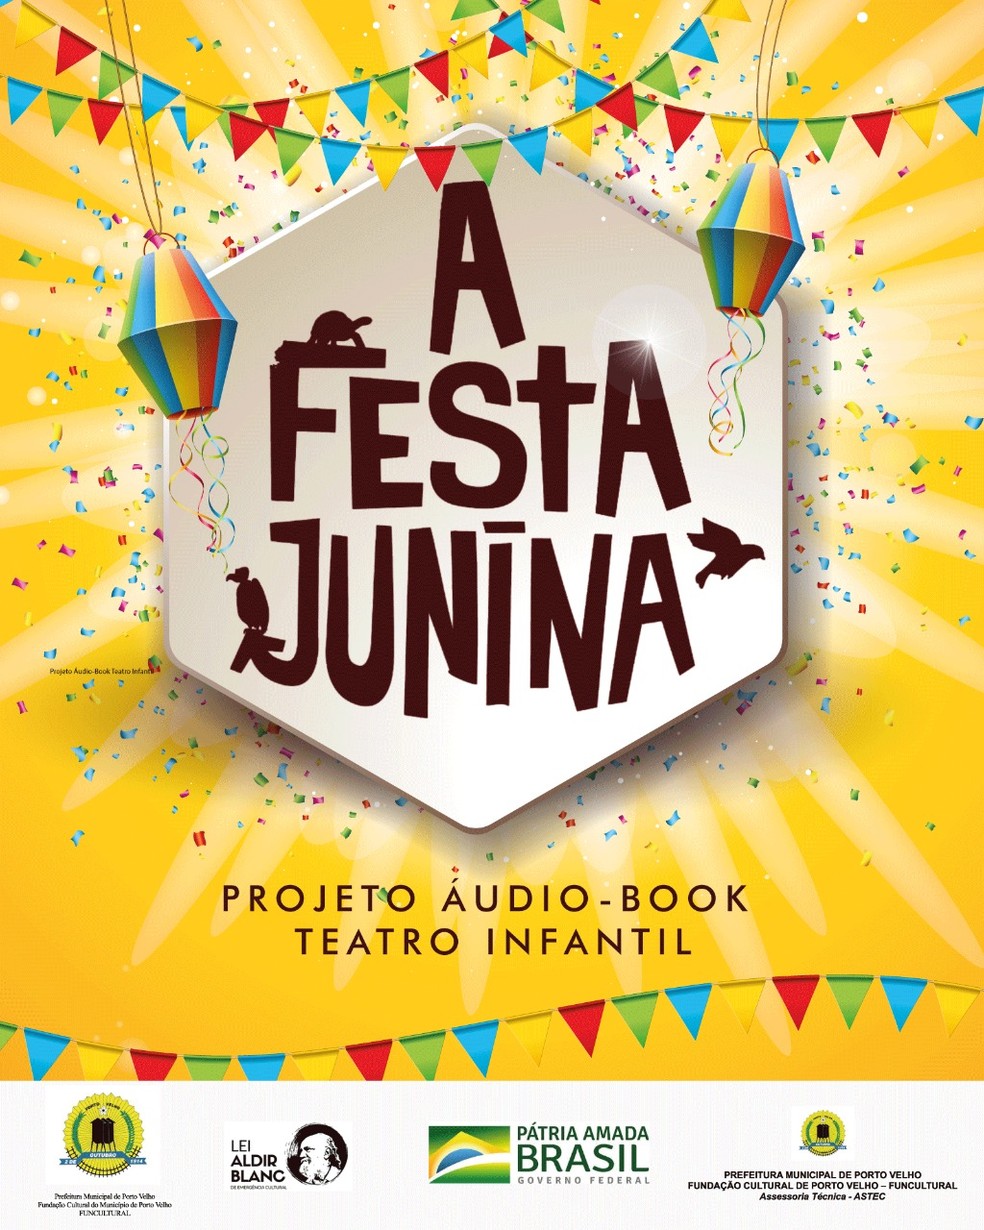 Projeto rondoniense lança audiobook gratuito com histórias infantis |  Rondônia | G1